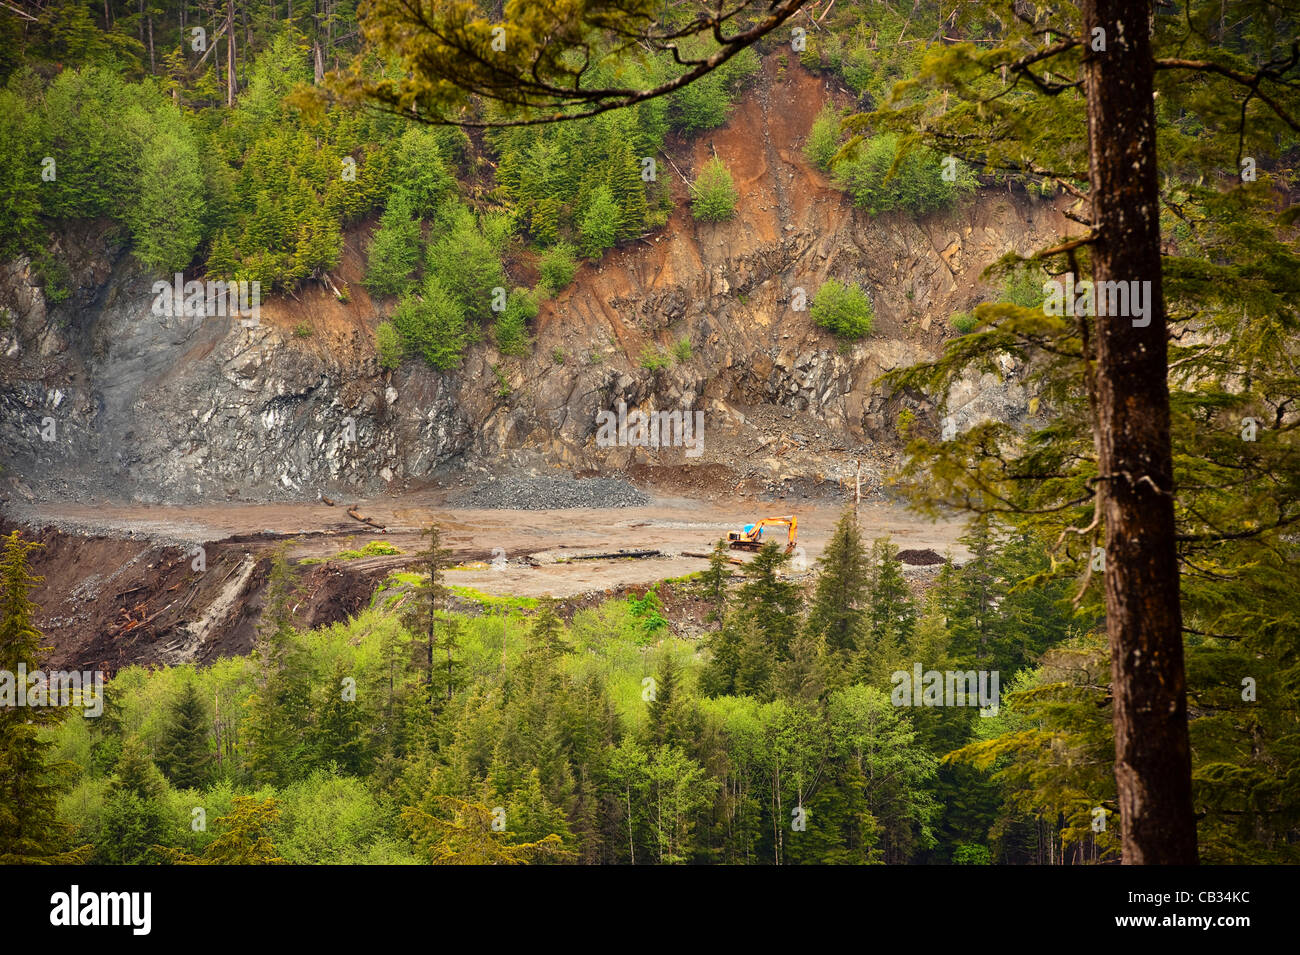 Sitka, Alaska 27. Mai 2012 Maschinen in Felsen Steinbruch am Rande des Regenwaldes im Südosten Alaskas. Stockfoto